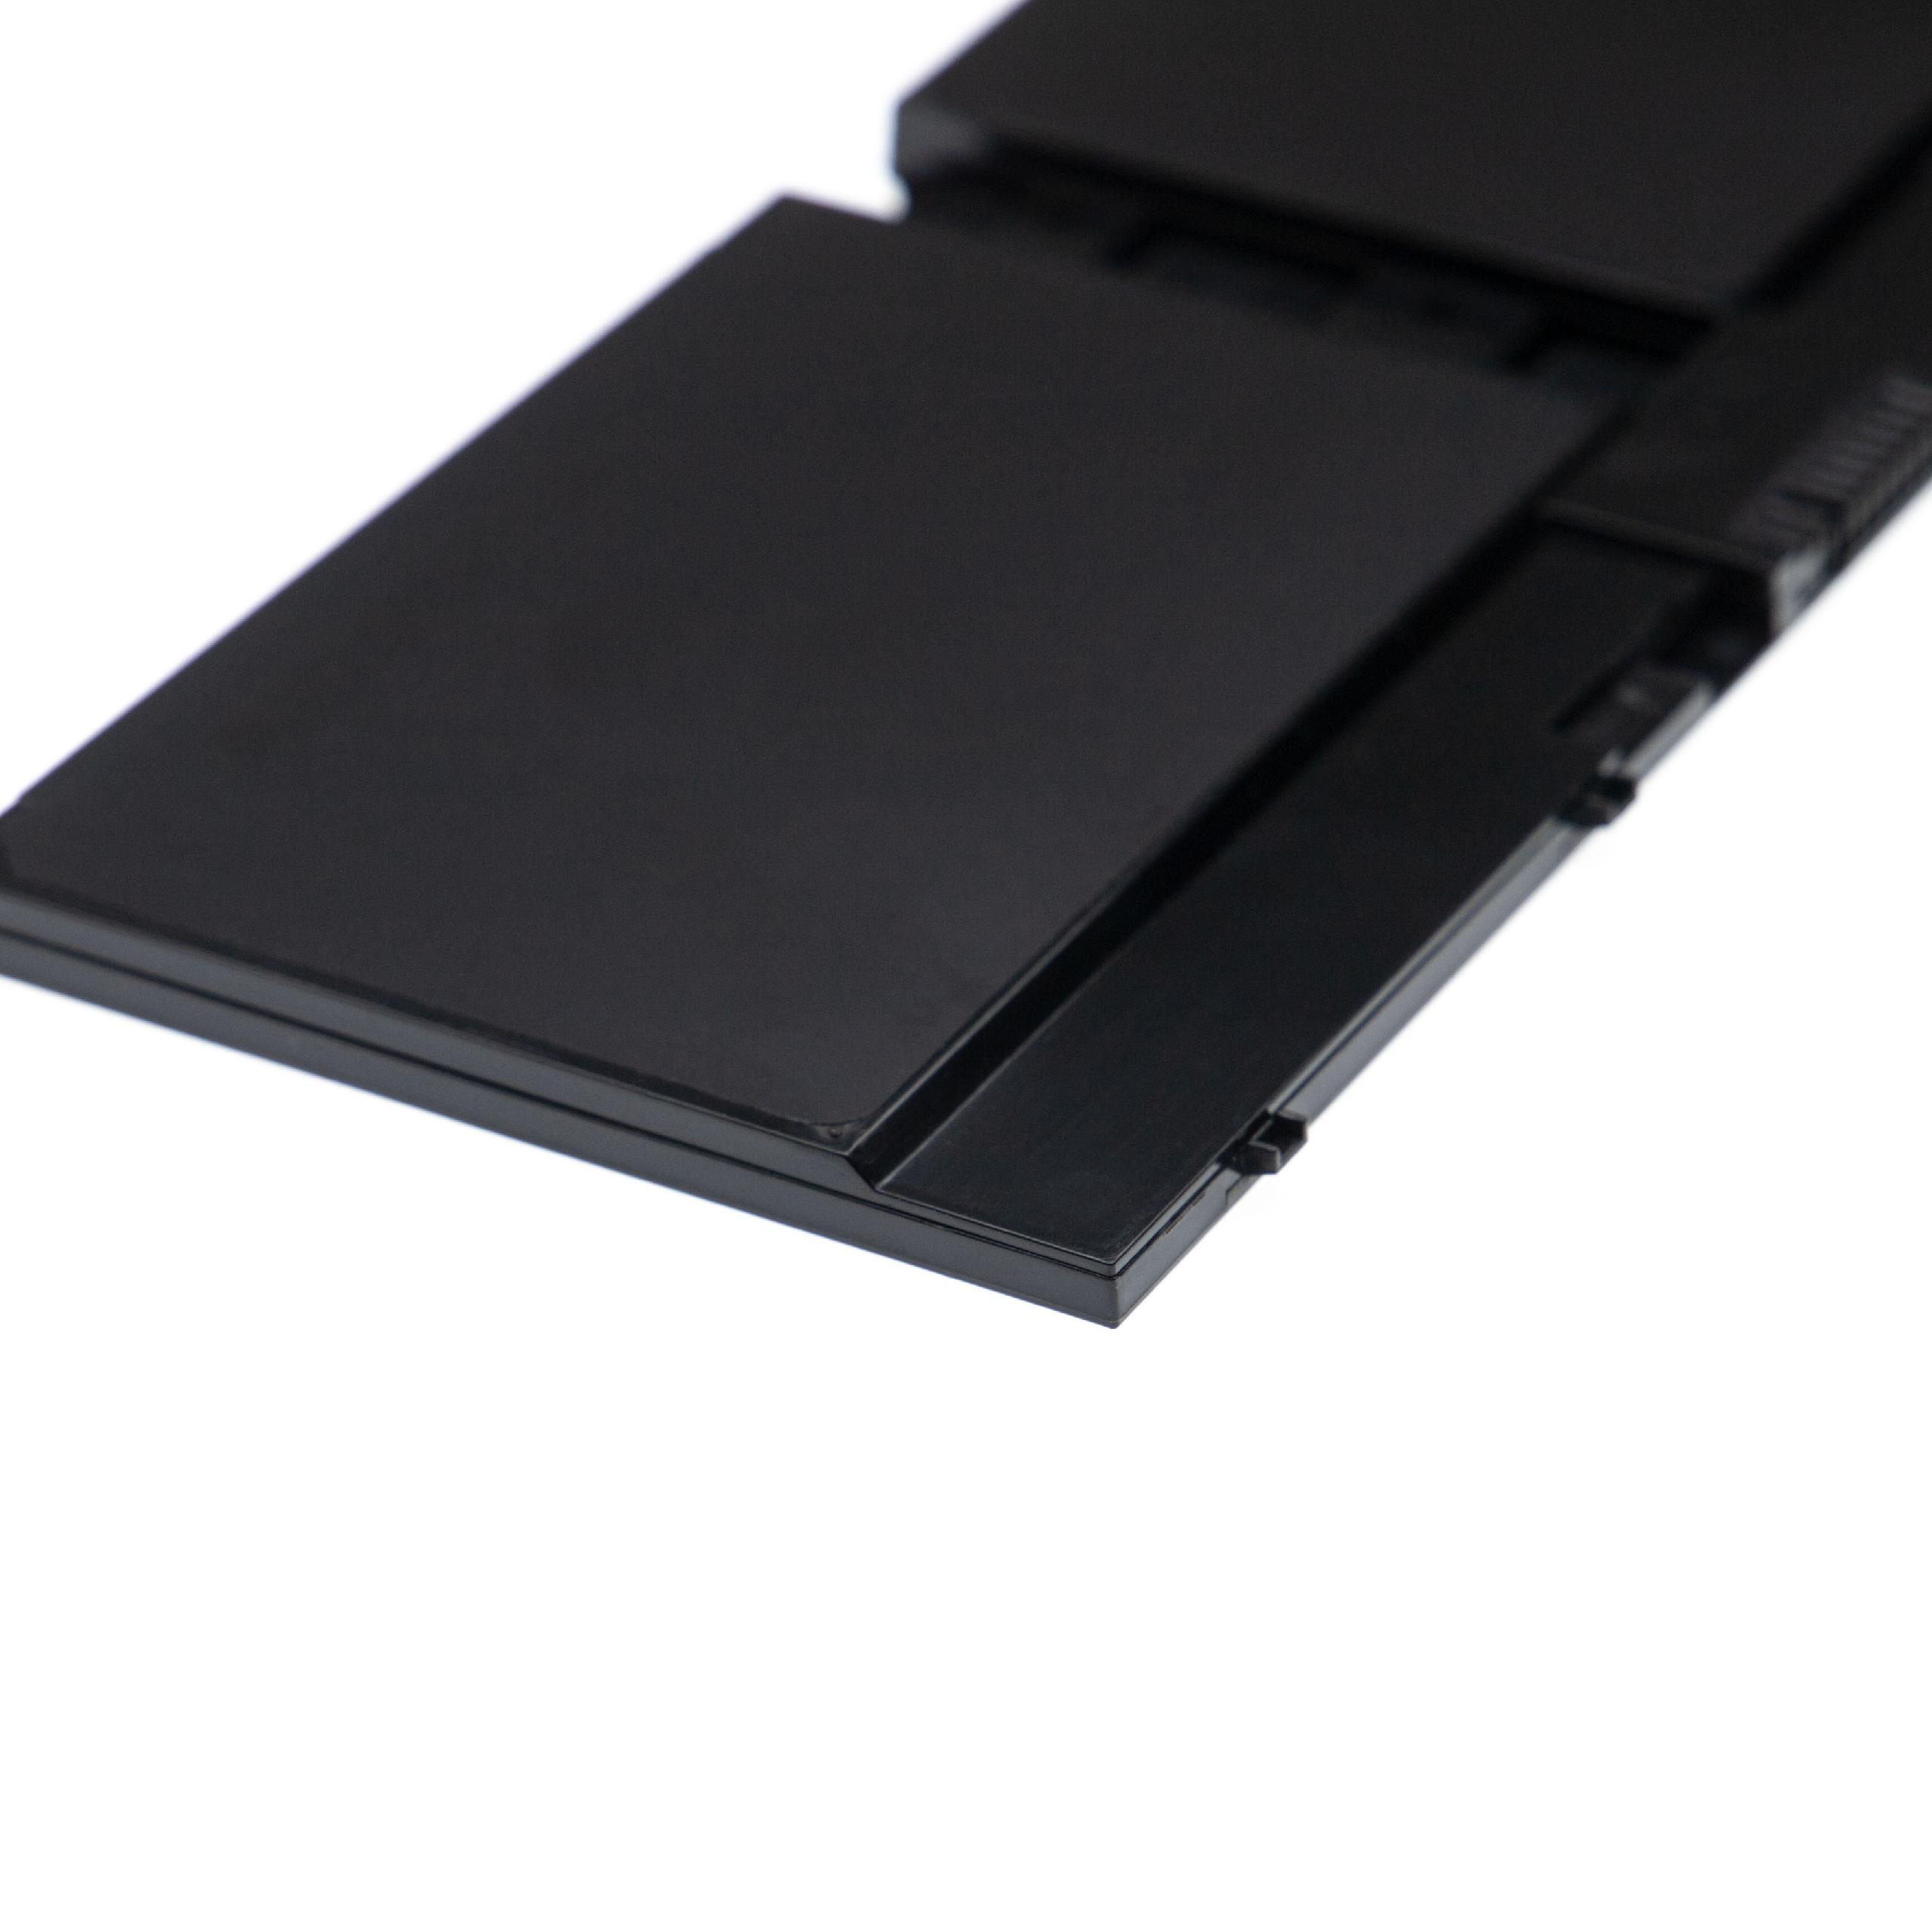 Batterie remplace Fujitsu CP651077-02, FMVNBP232 pour ordinateur portable - 3050mAh 14,4V Li-ion, noir